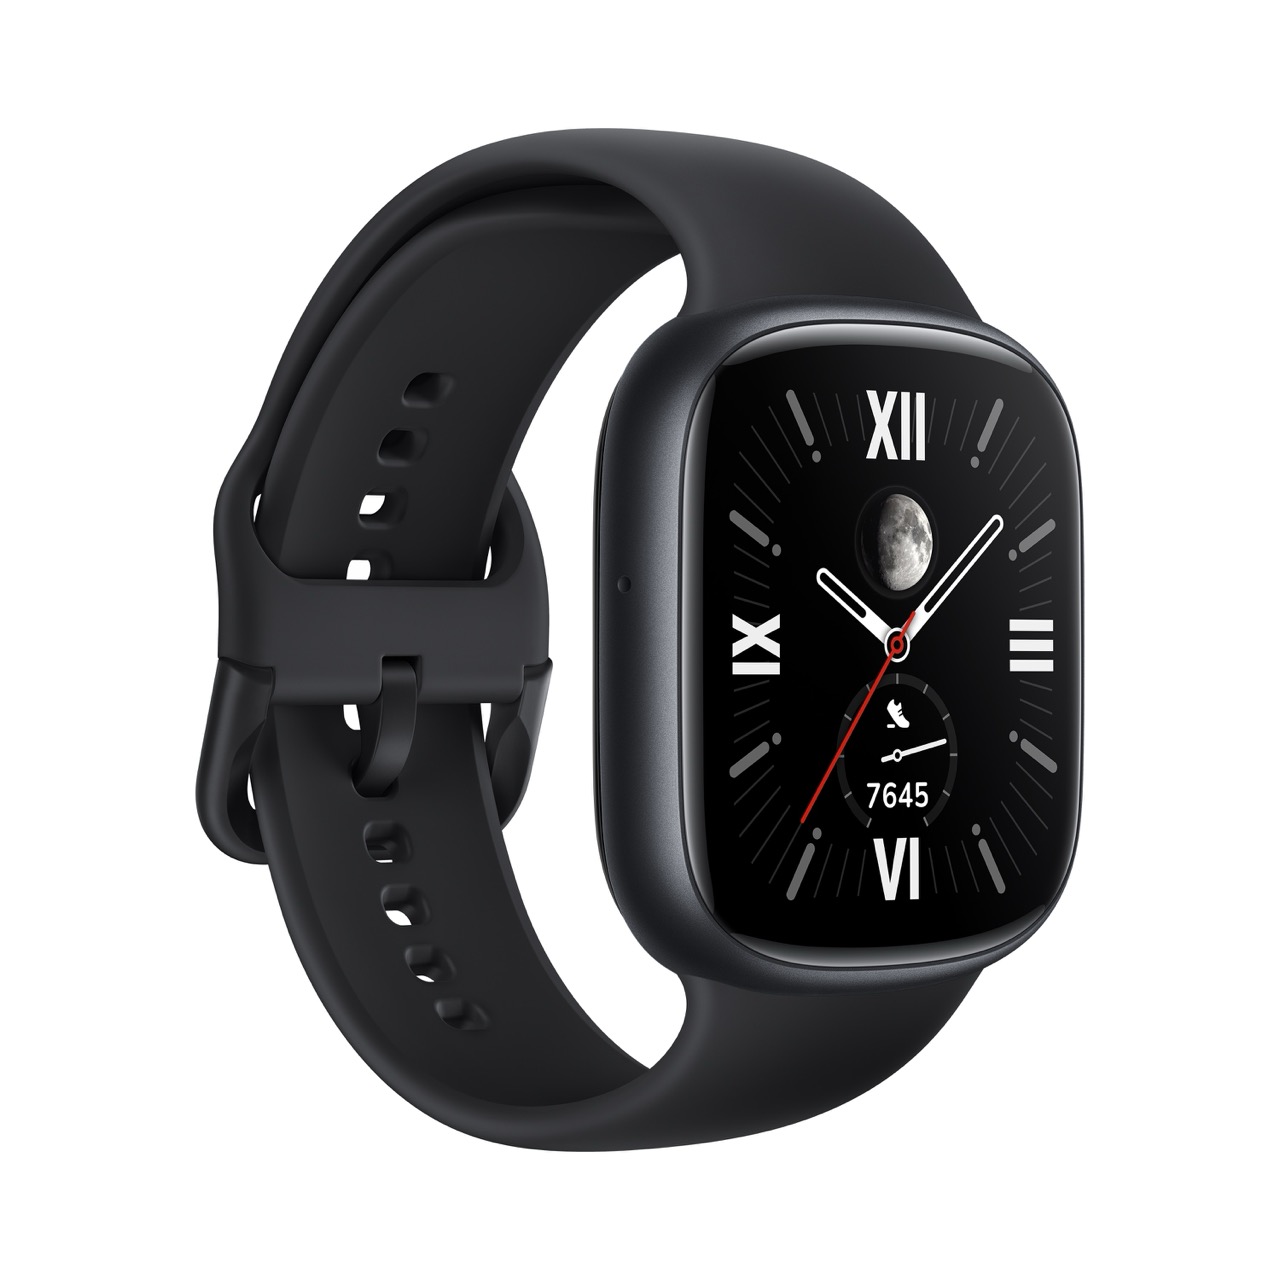 Новые умные часы HONOR Watch 4 уже доступны в российских магазинах электроники и на маркетплейсах